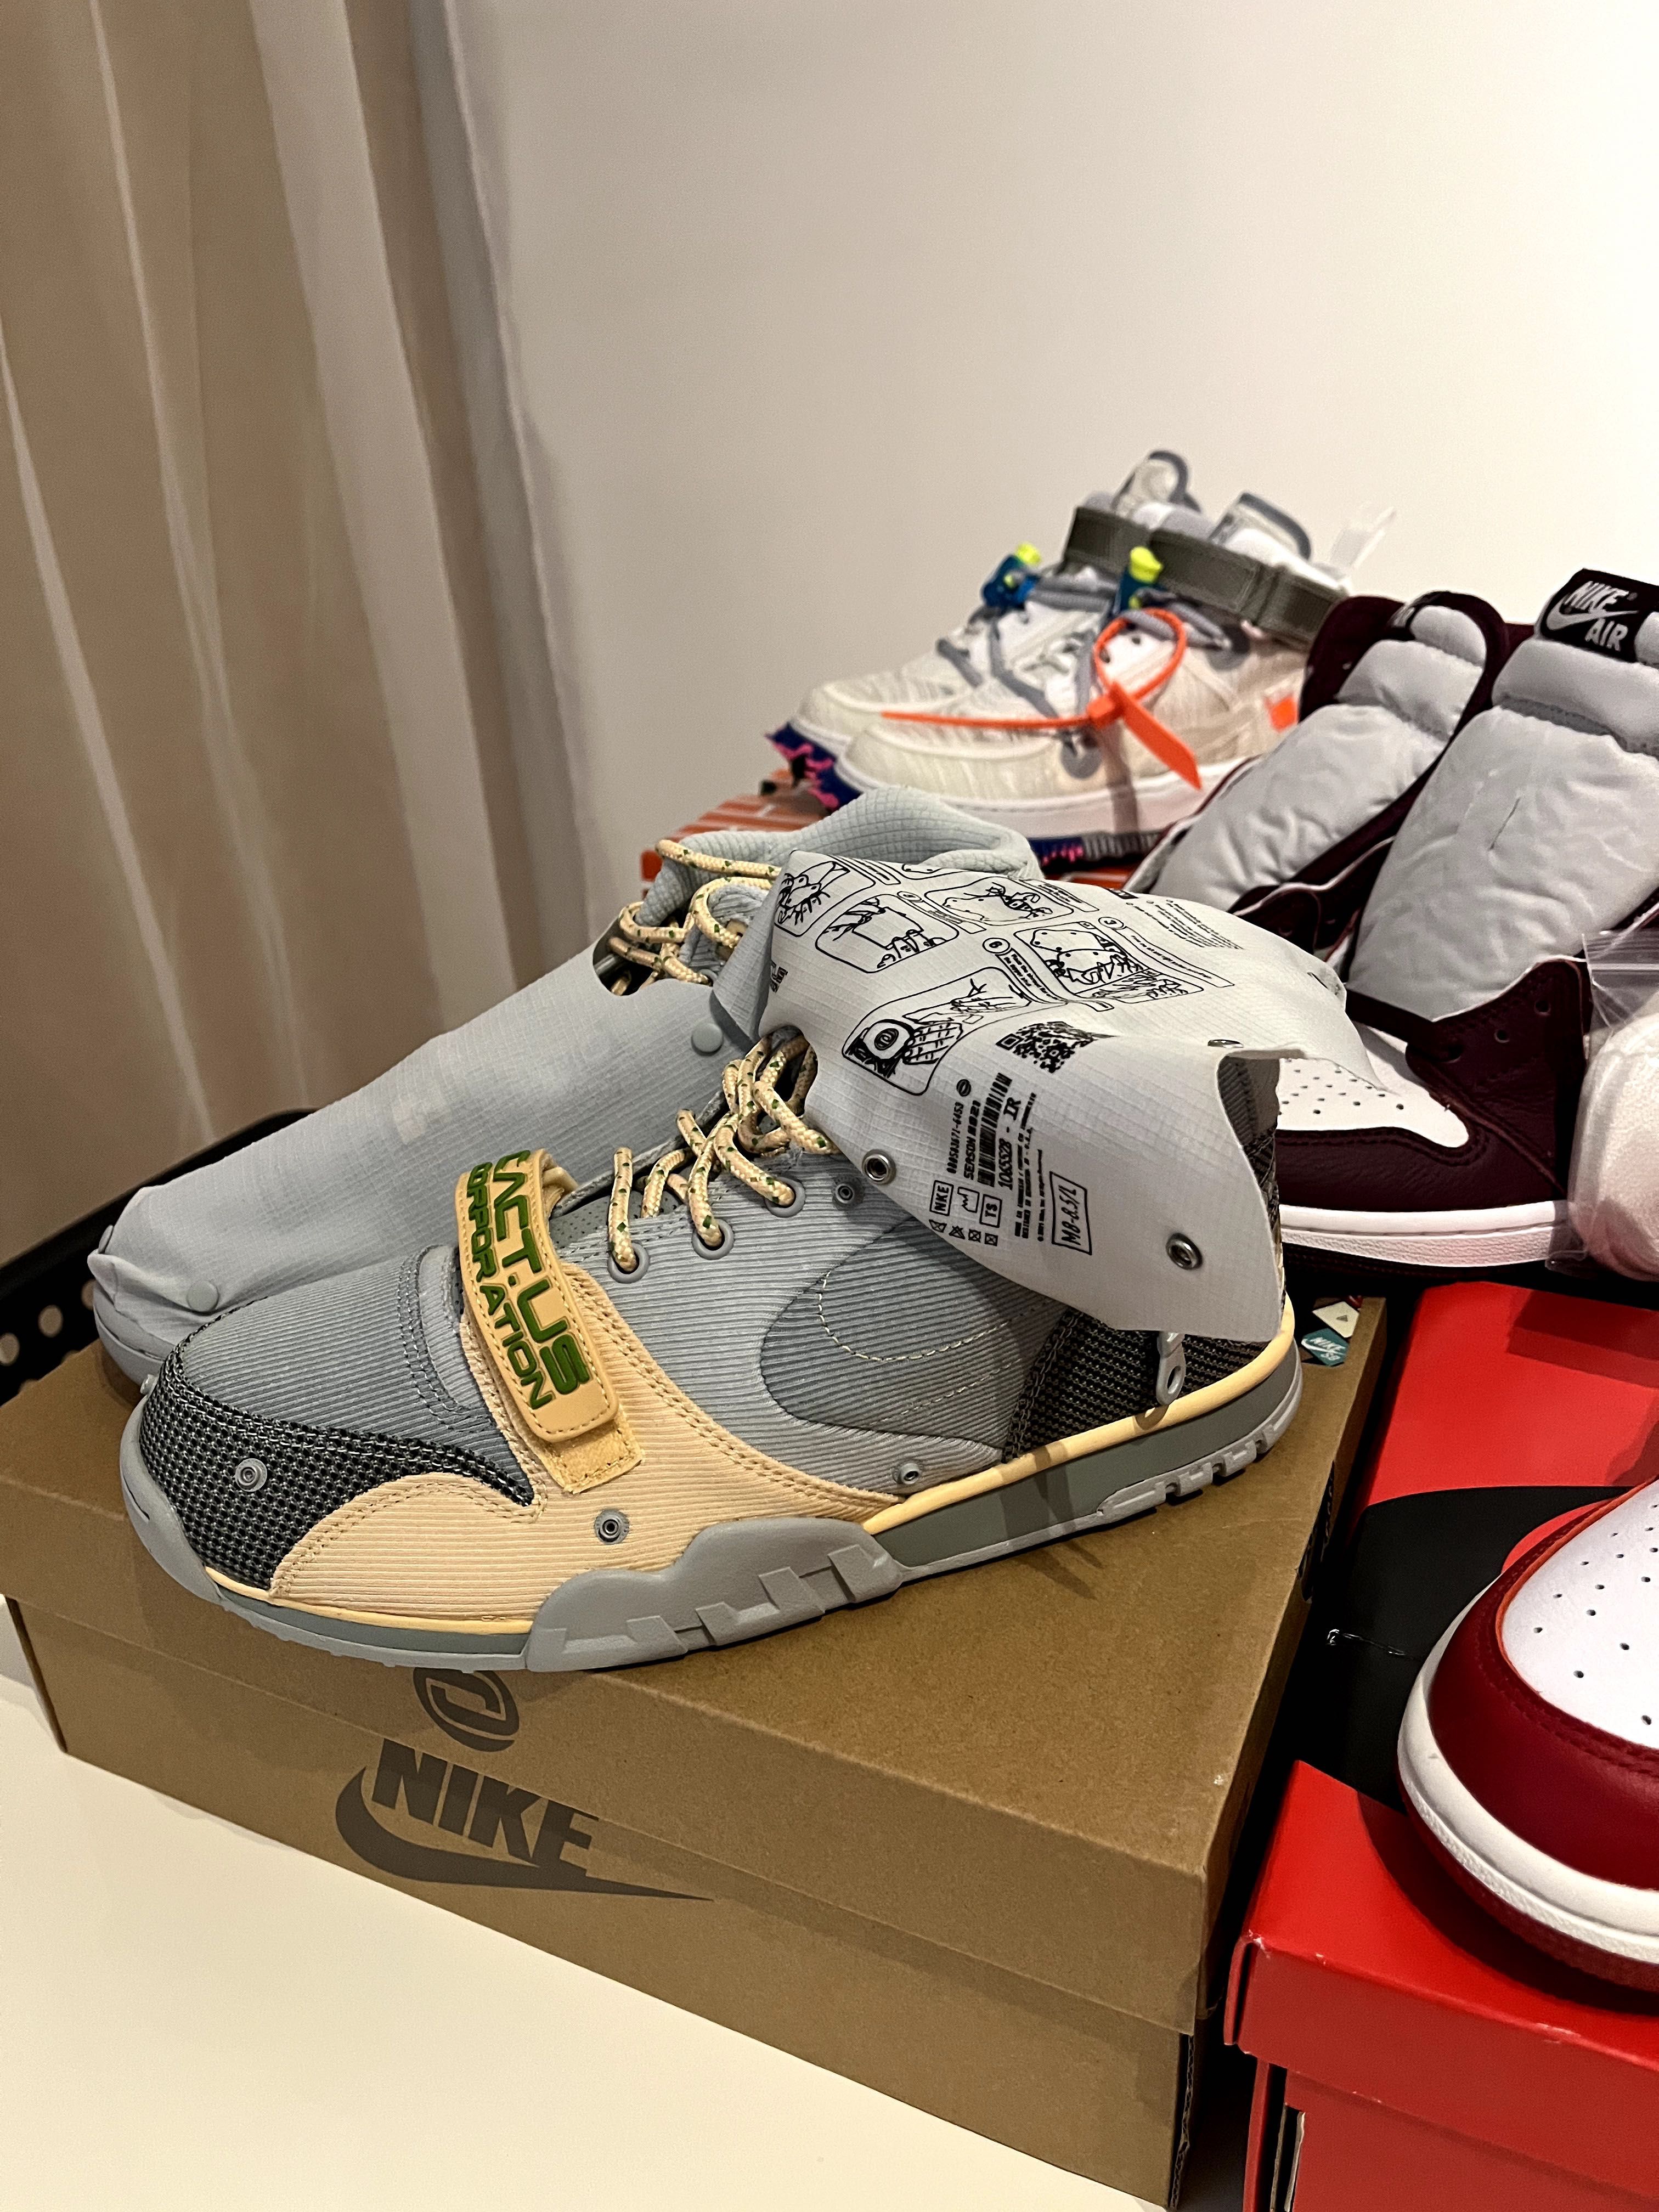 Nike Retro 1 / Travis Scott / Yeezy 450 / Air Jordan - marimi: 40 - 41